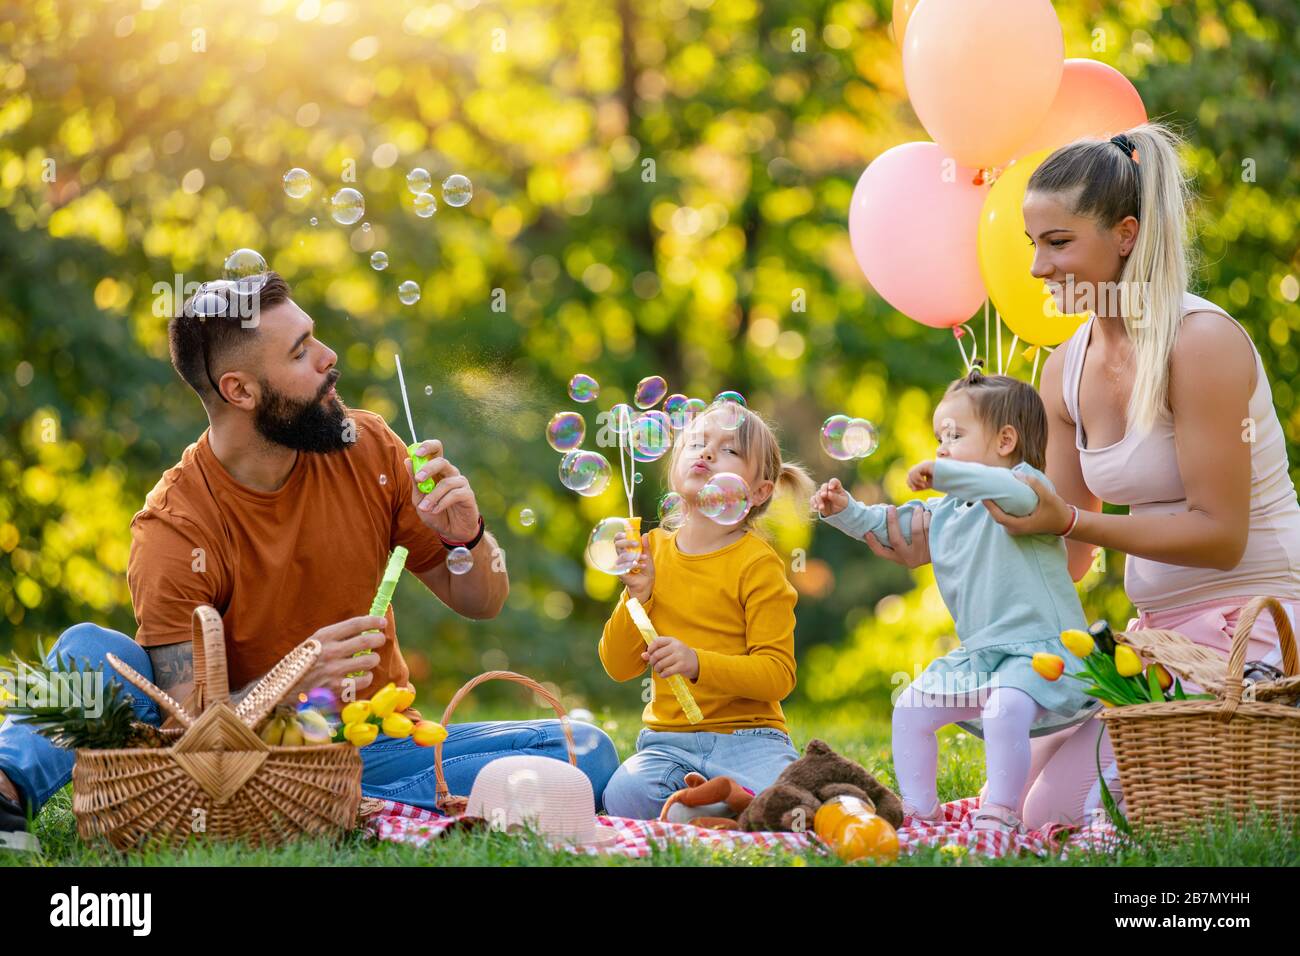 Glückliche Familie im Park zusammen an einem sonnigen Tag - sie sind Blasseifenblasen.Familie genießt einen Tag im Park.Mutter, Vater und Kinder picknicken Stockfoto